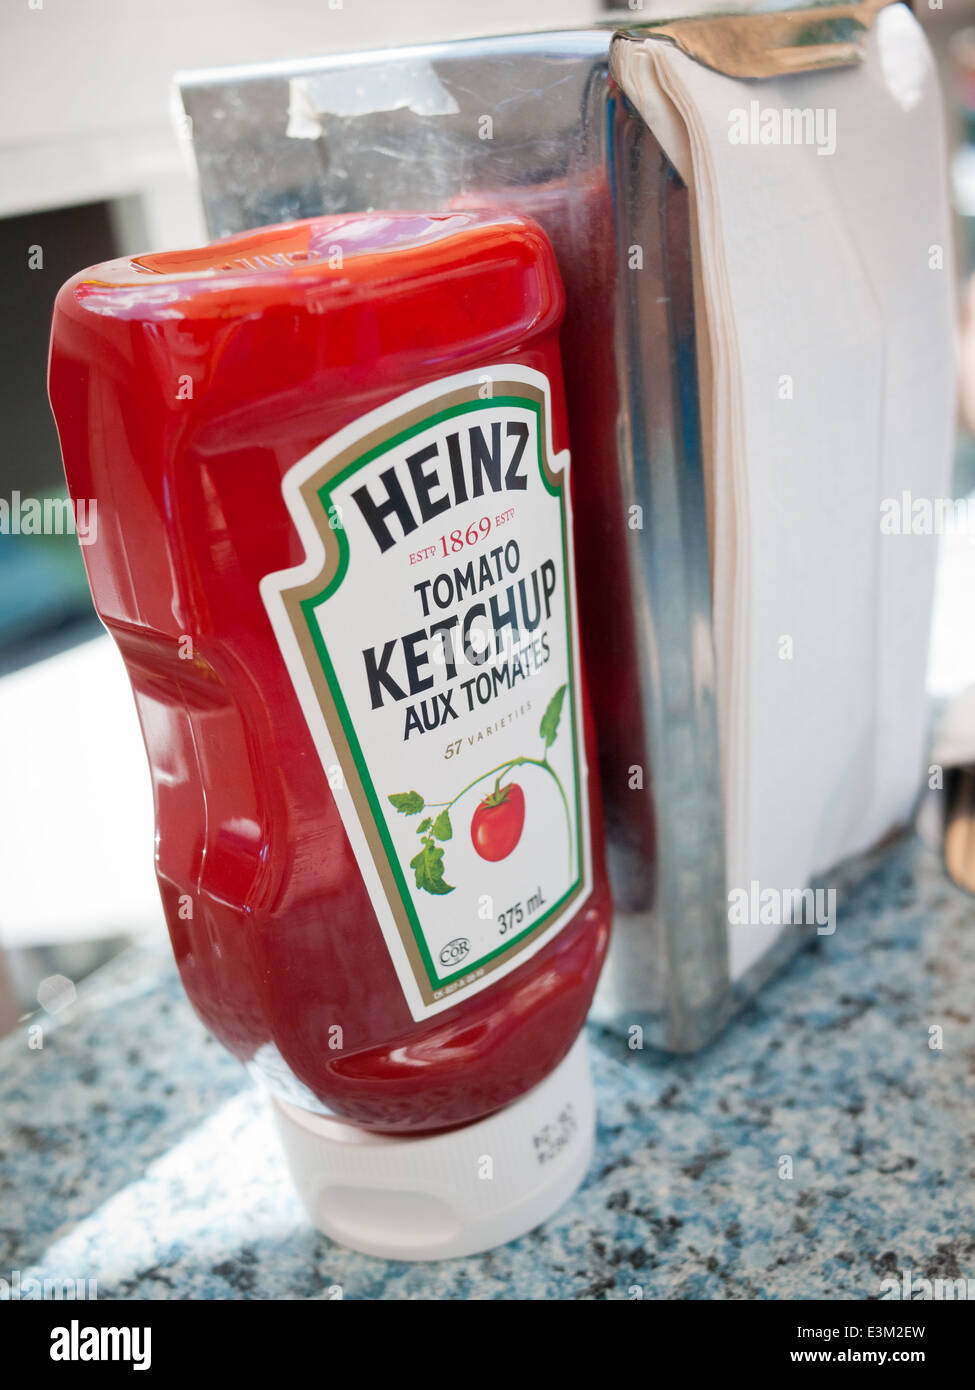 L'envers d'une bouteille de ketchup Heinz. Avec l'emballage des étiquettes en français et en anglais s'affiche. Banque D'Images